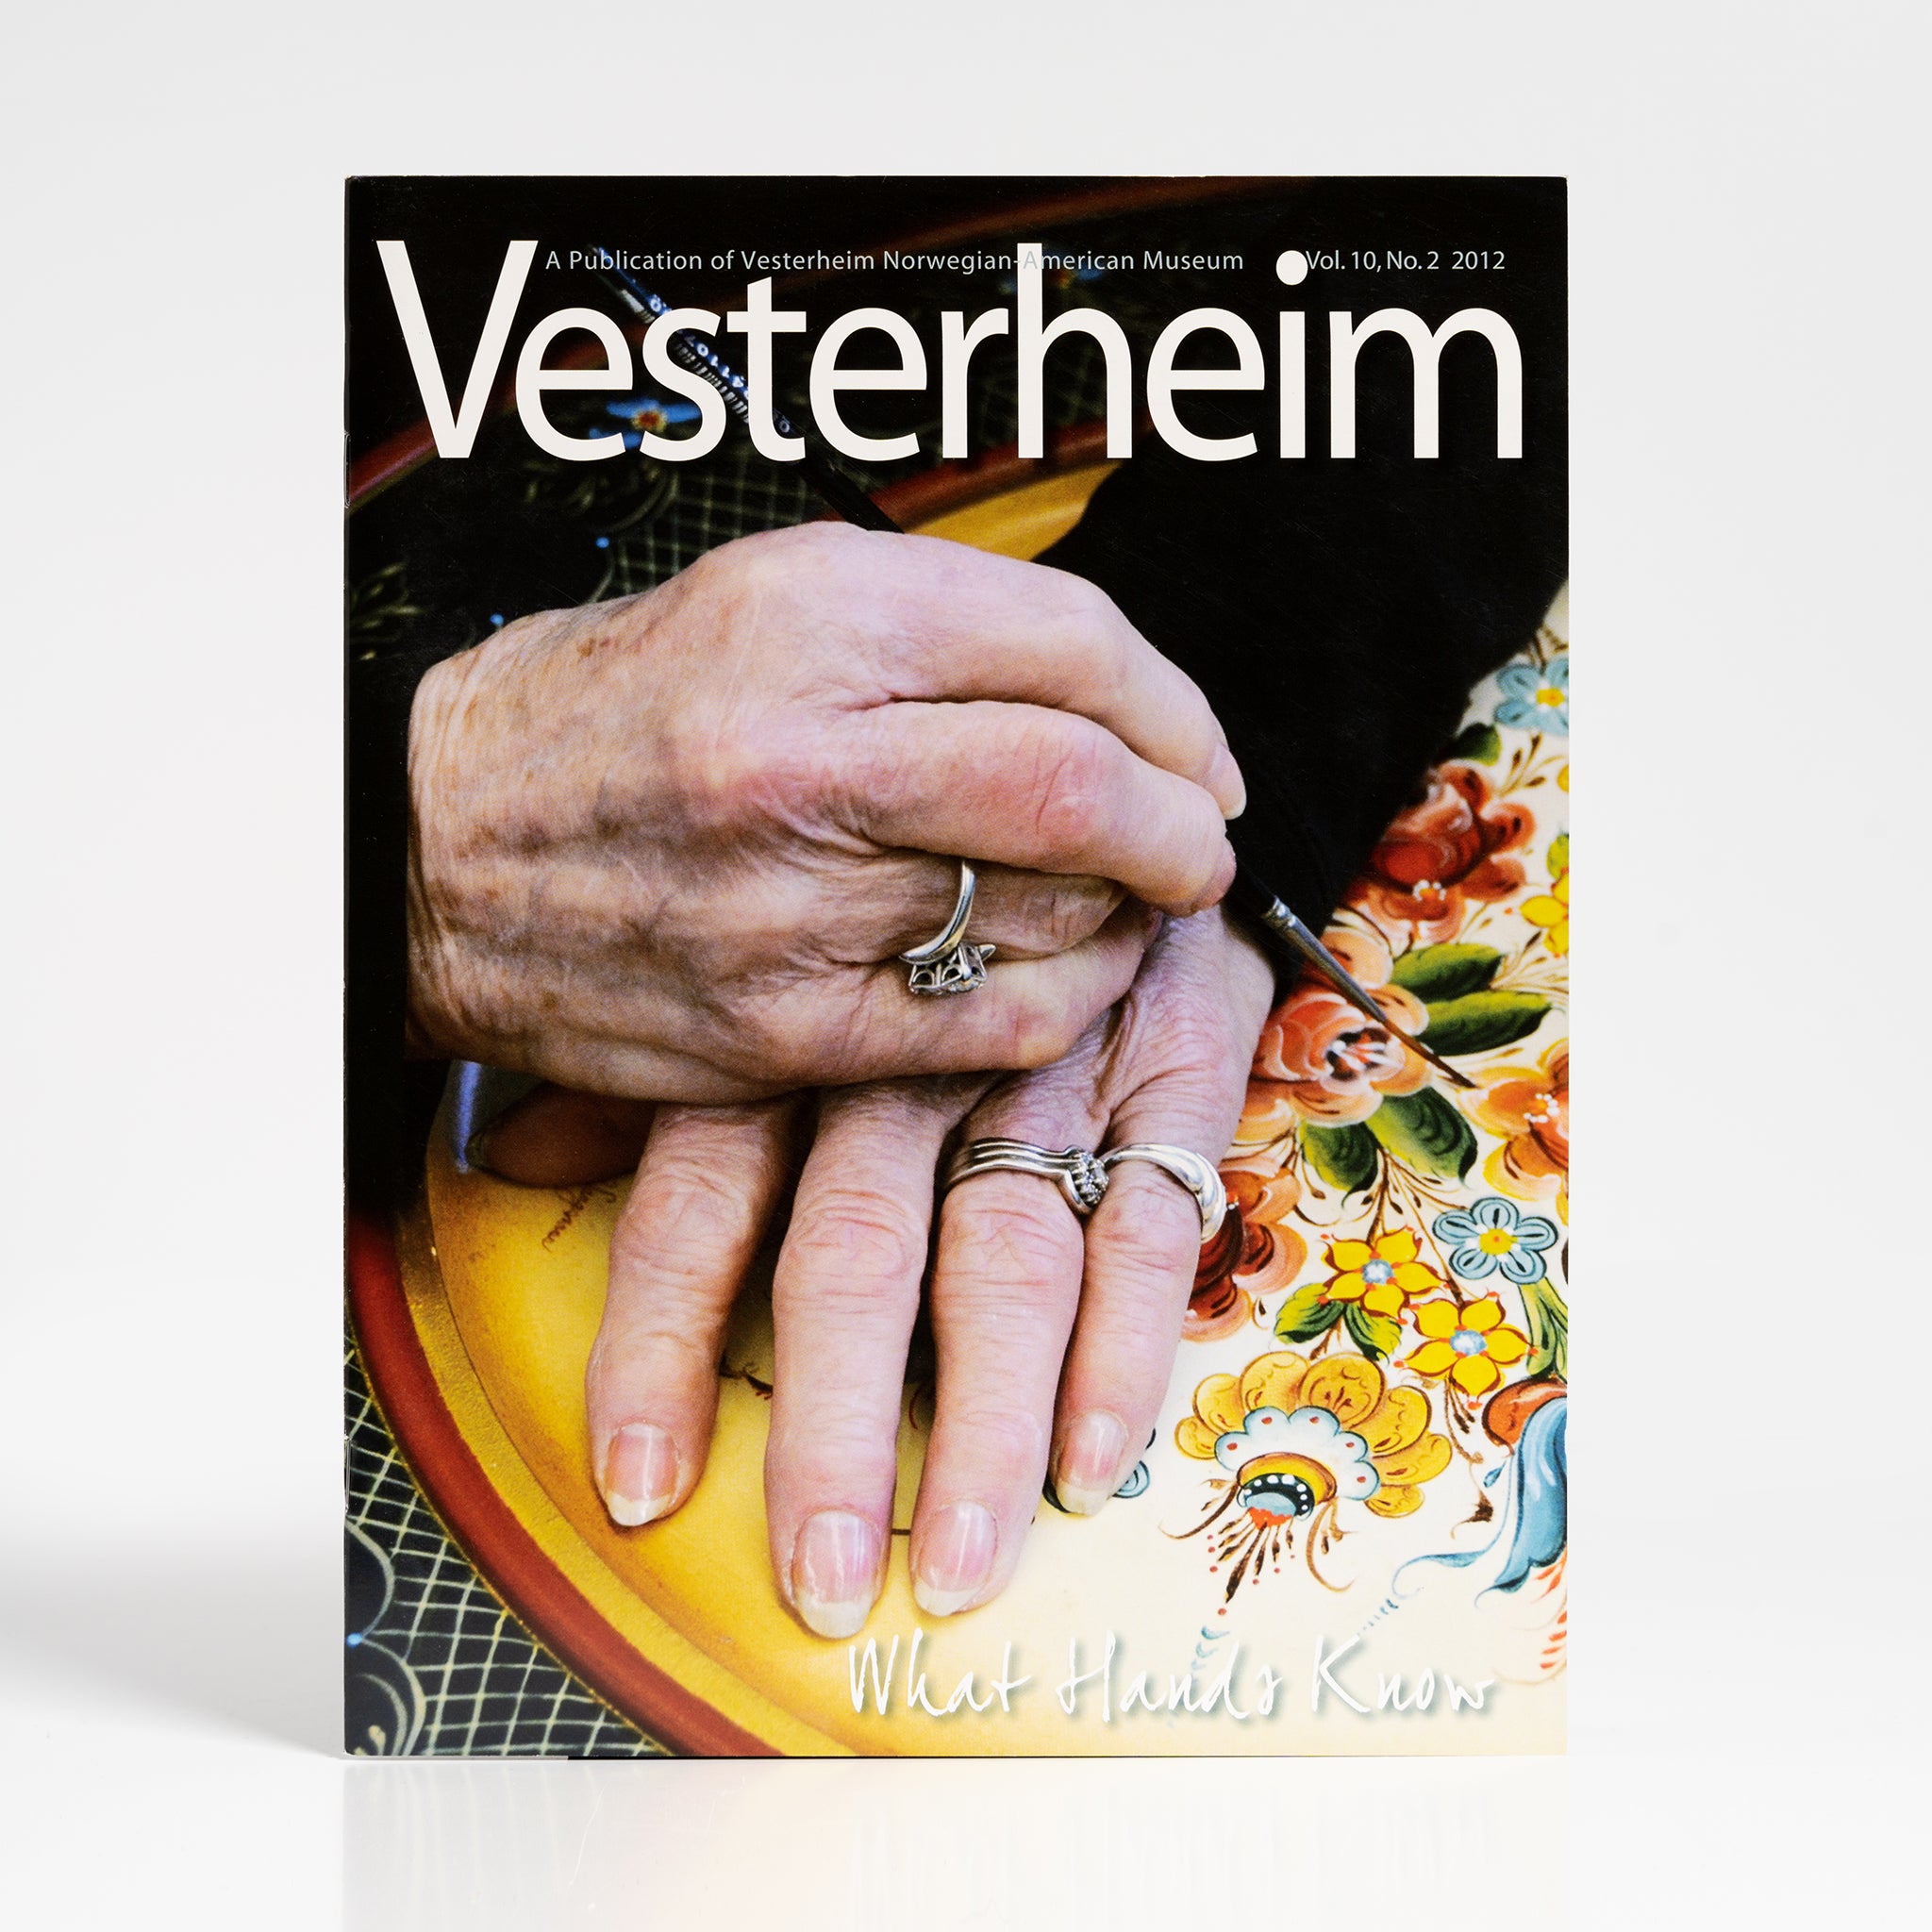 Vesterheim Magazine Vol. 10, No. 2 2012 - What Hands Know